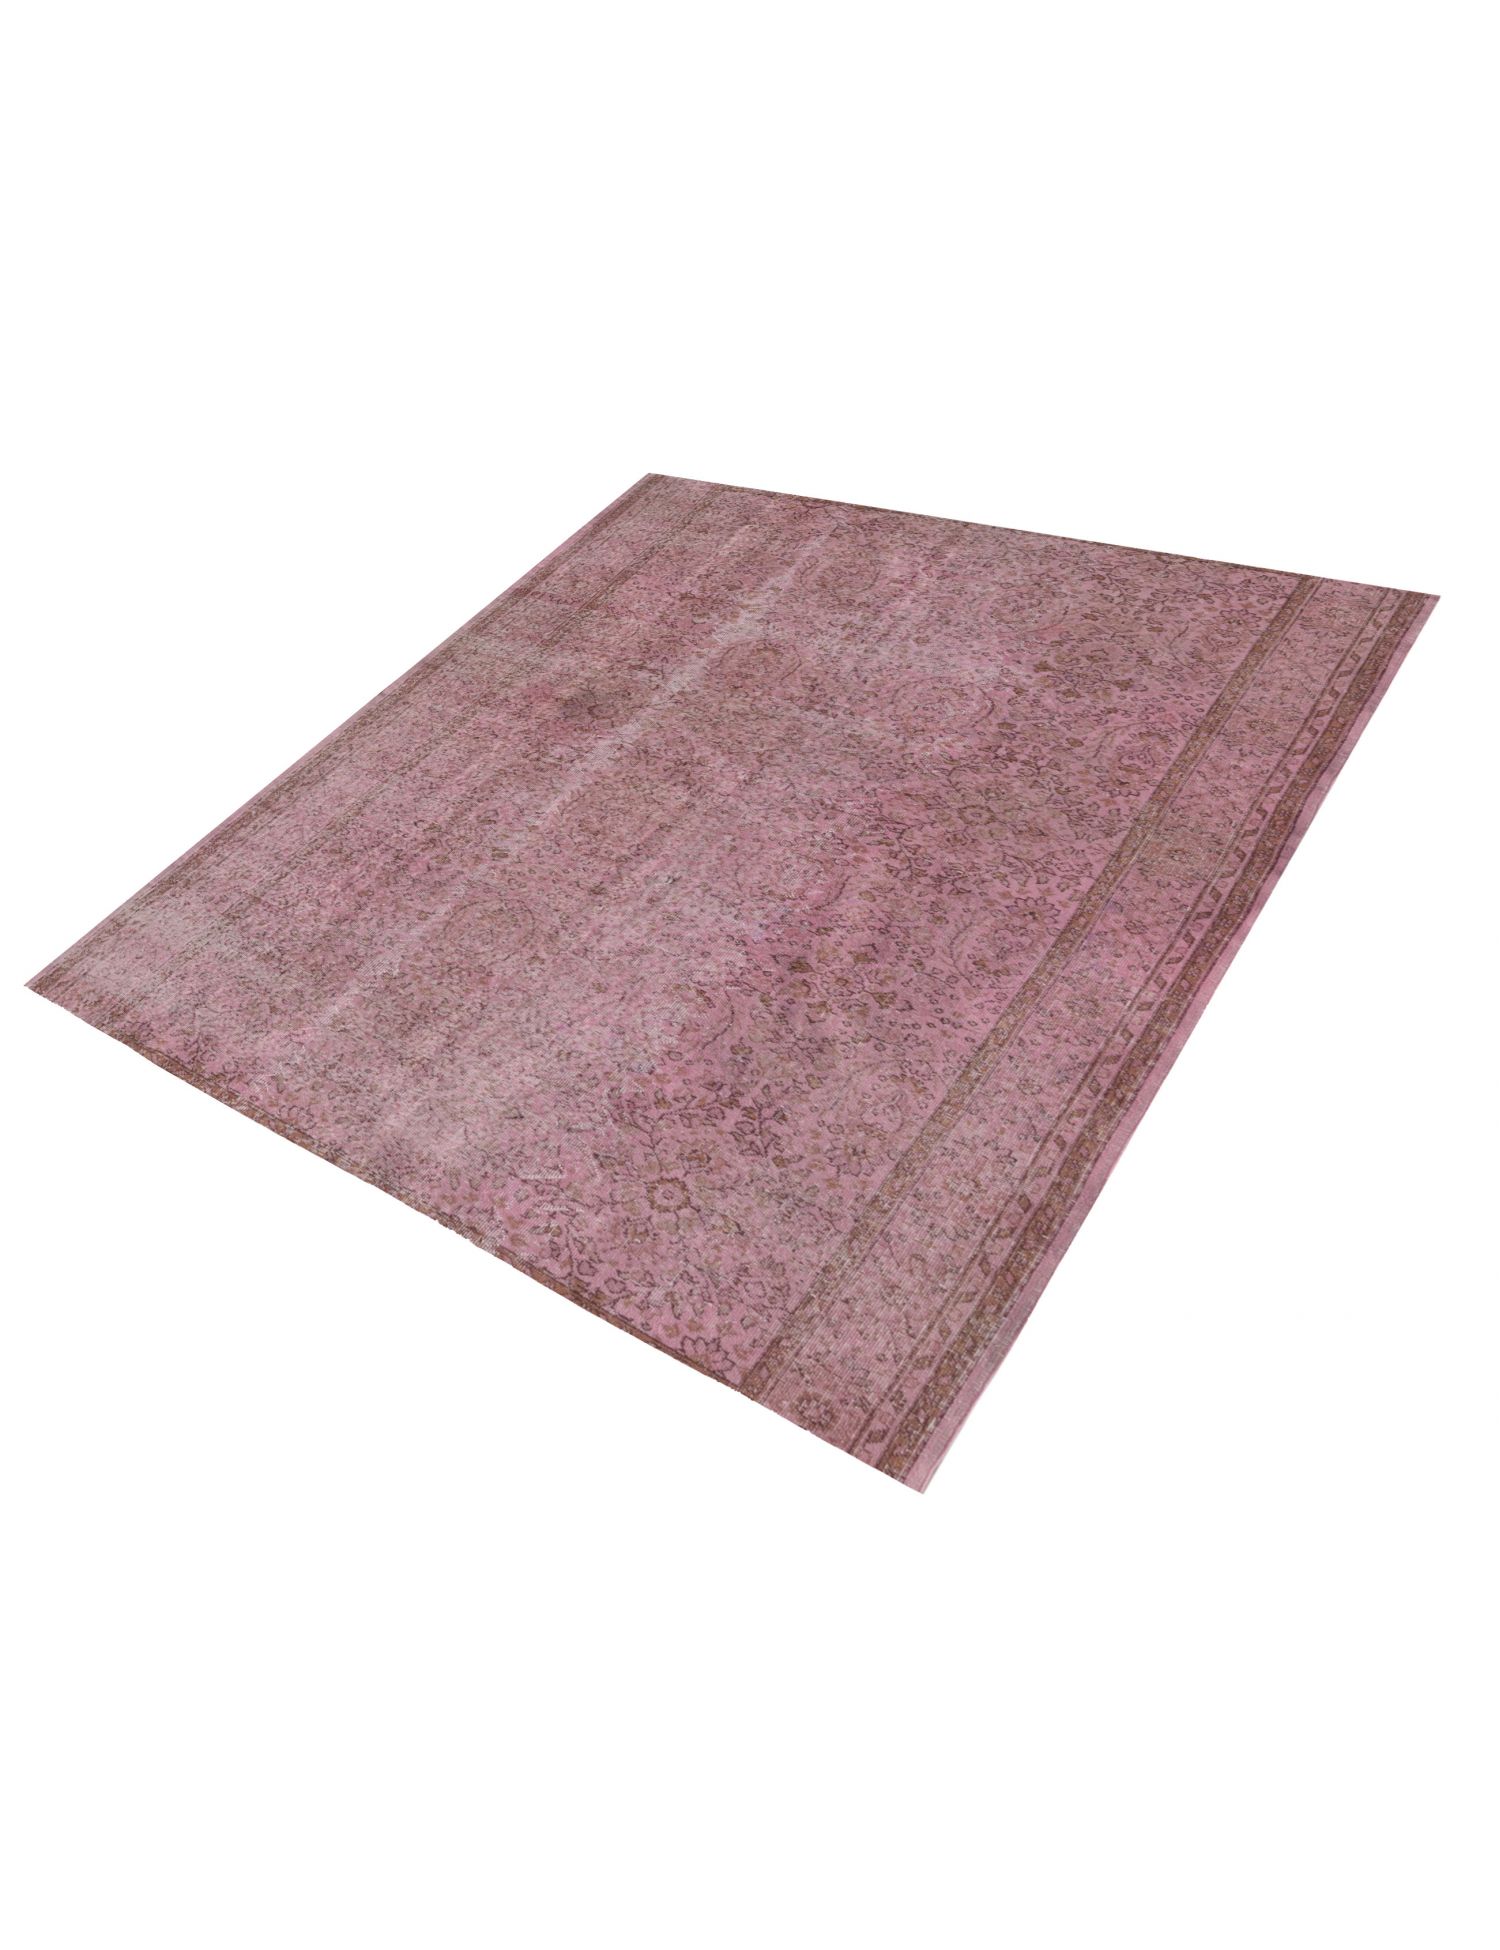 Vintage Teppich  rosa <br/>200 x 200 cm